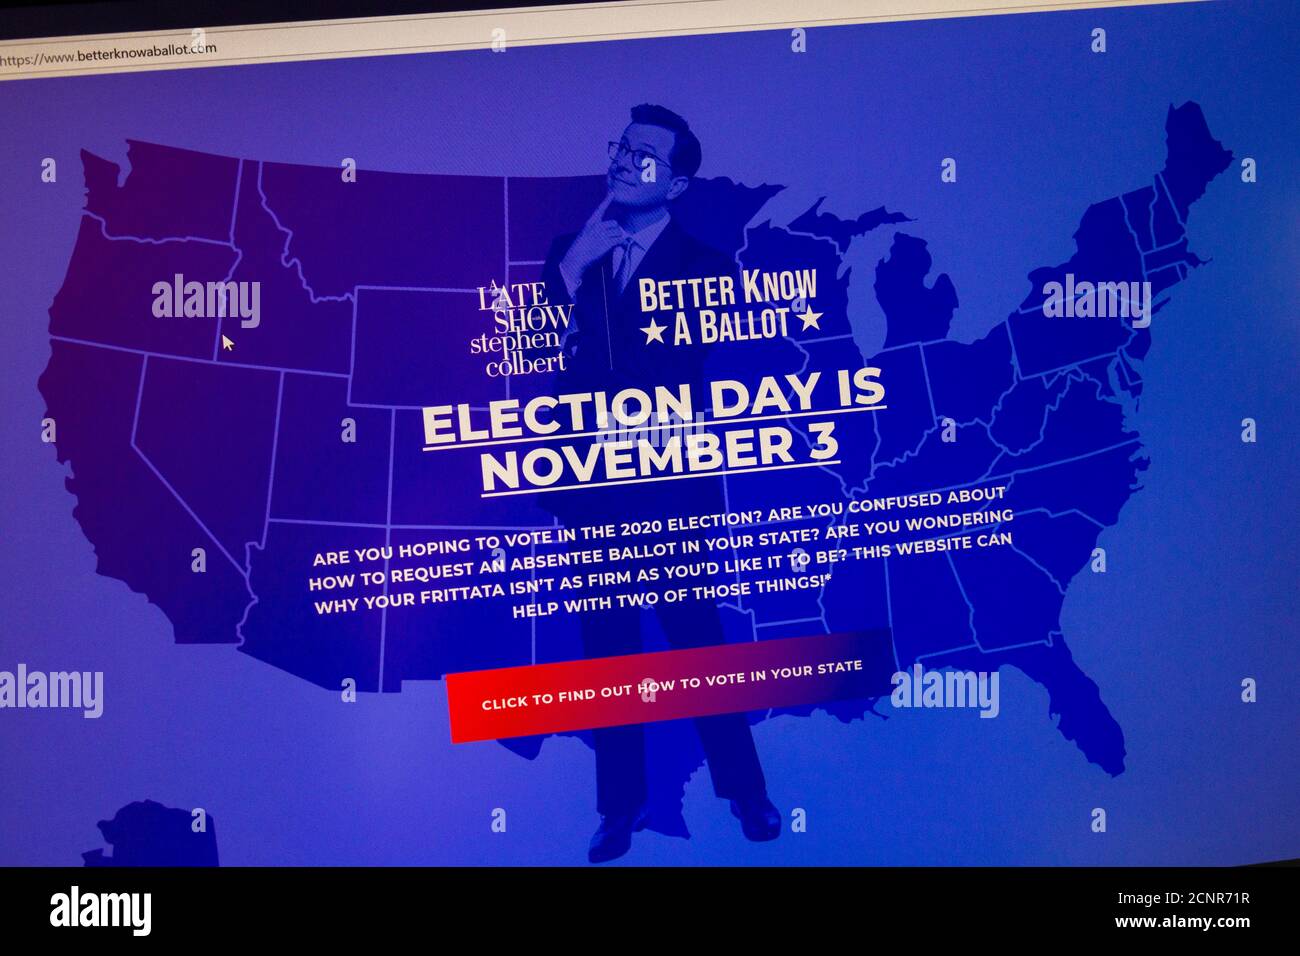 Capture d'écran du site Web « A late Show with Stephen Colbert » www. betterknowaballot.com avec comment voter des informations pour l'élection américaine 2020. Banque D'Images